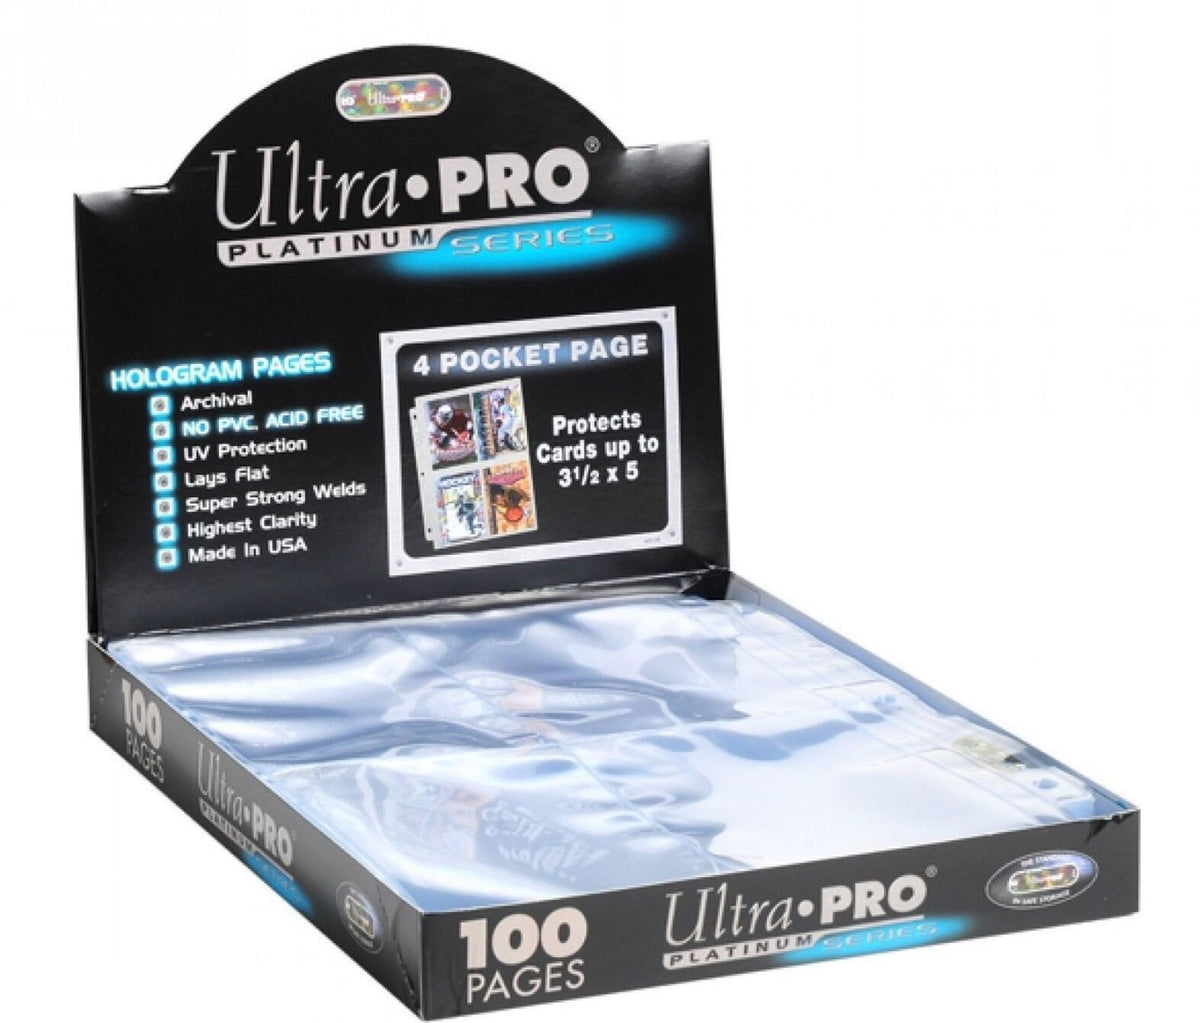 Side - UltraPro: Platinum Series 4-Pocket